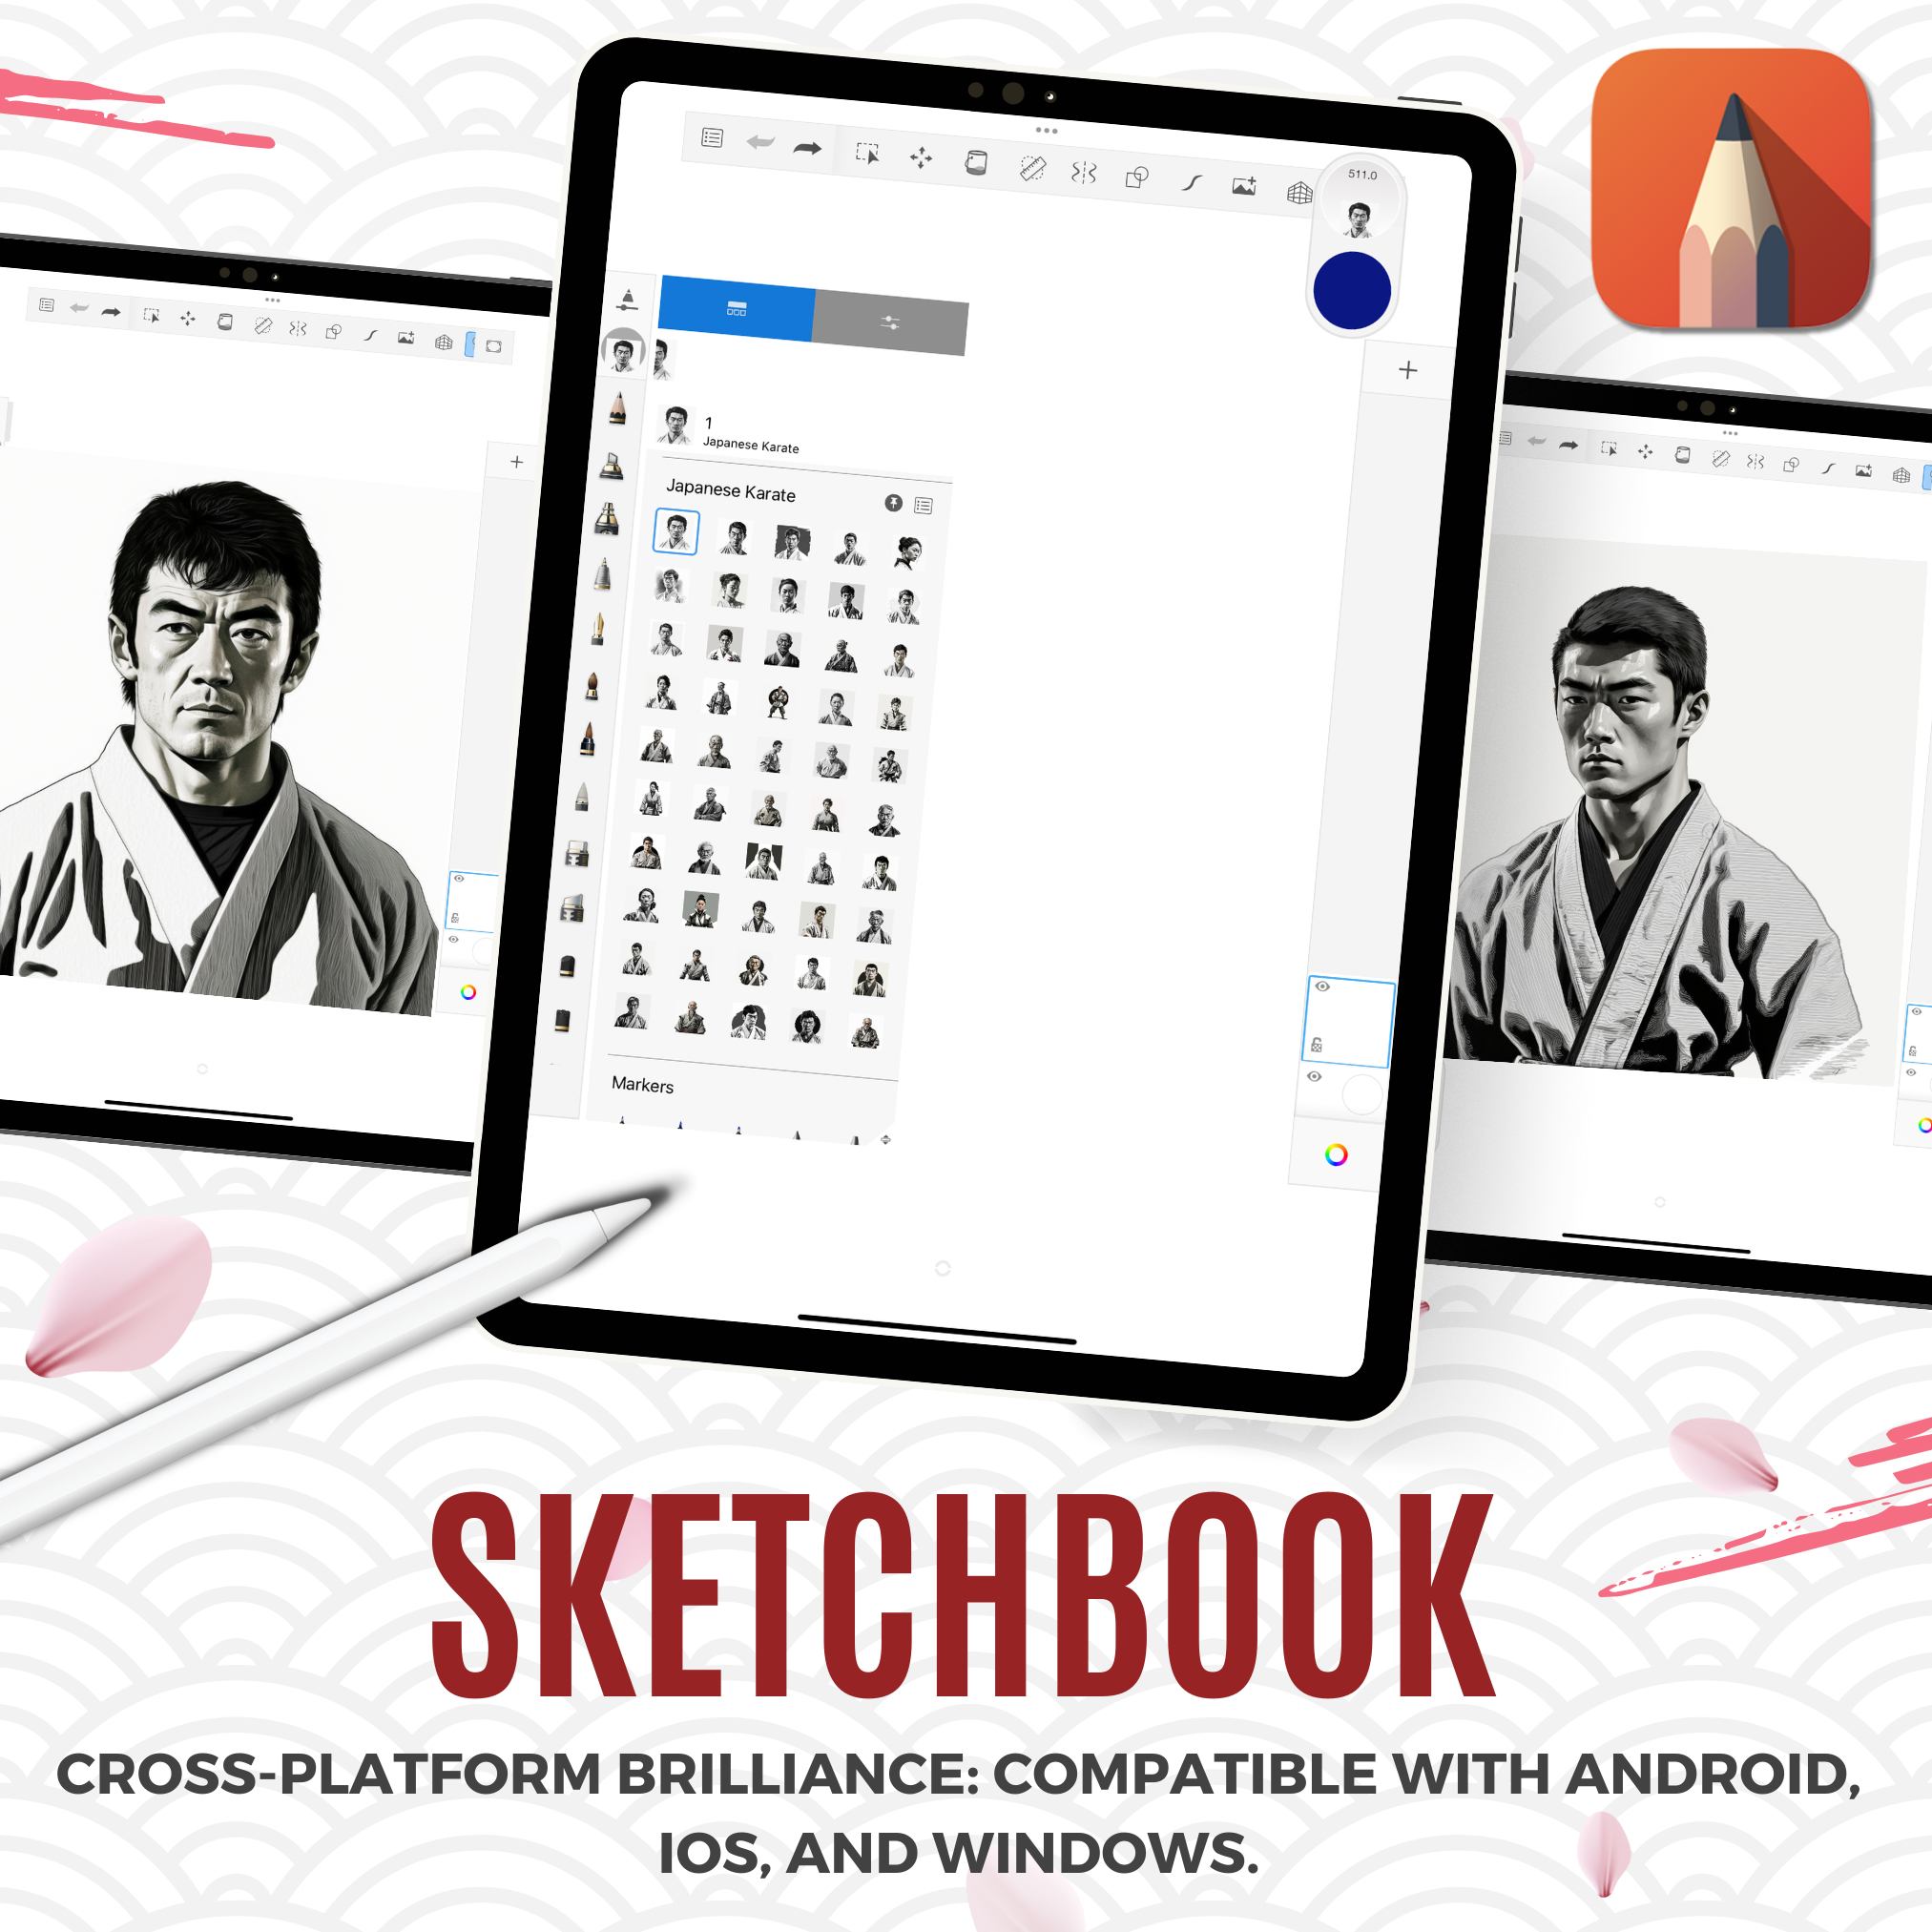 Colección de diseño de referencia digital de karate japonés: 50 imágenes de Procreate y Sketchbook